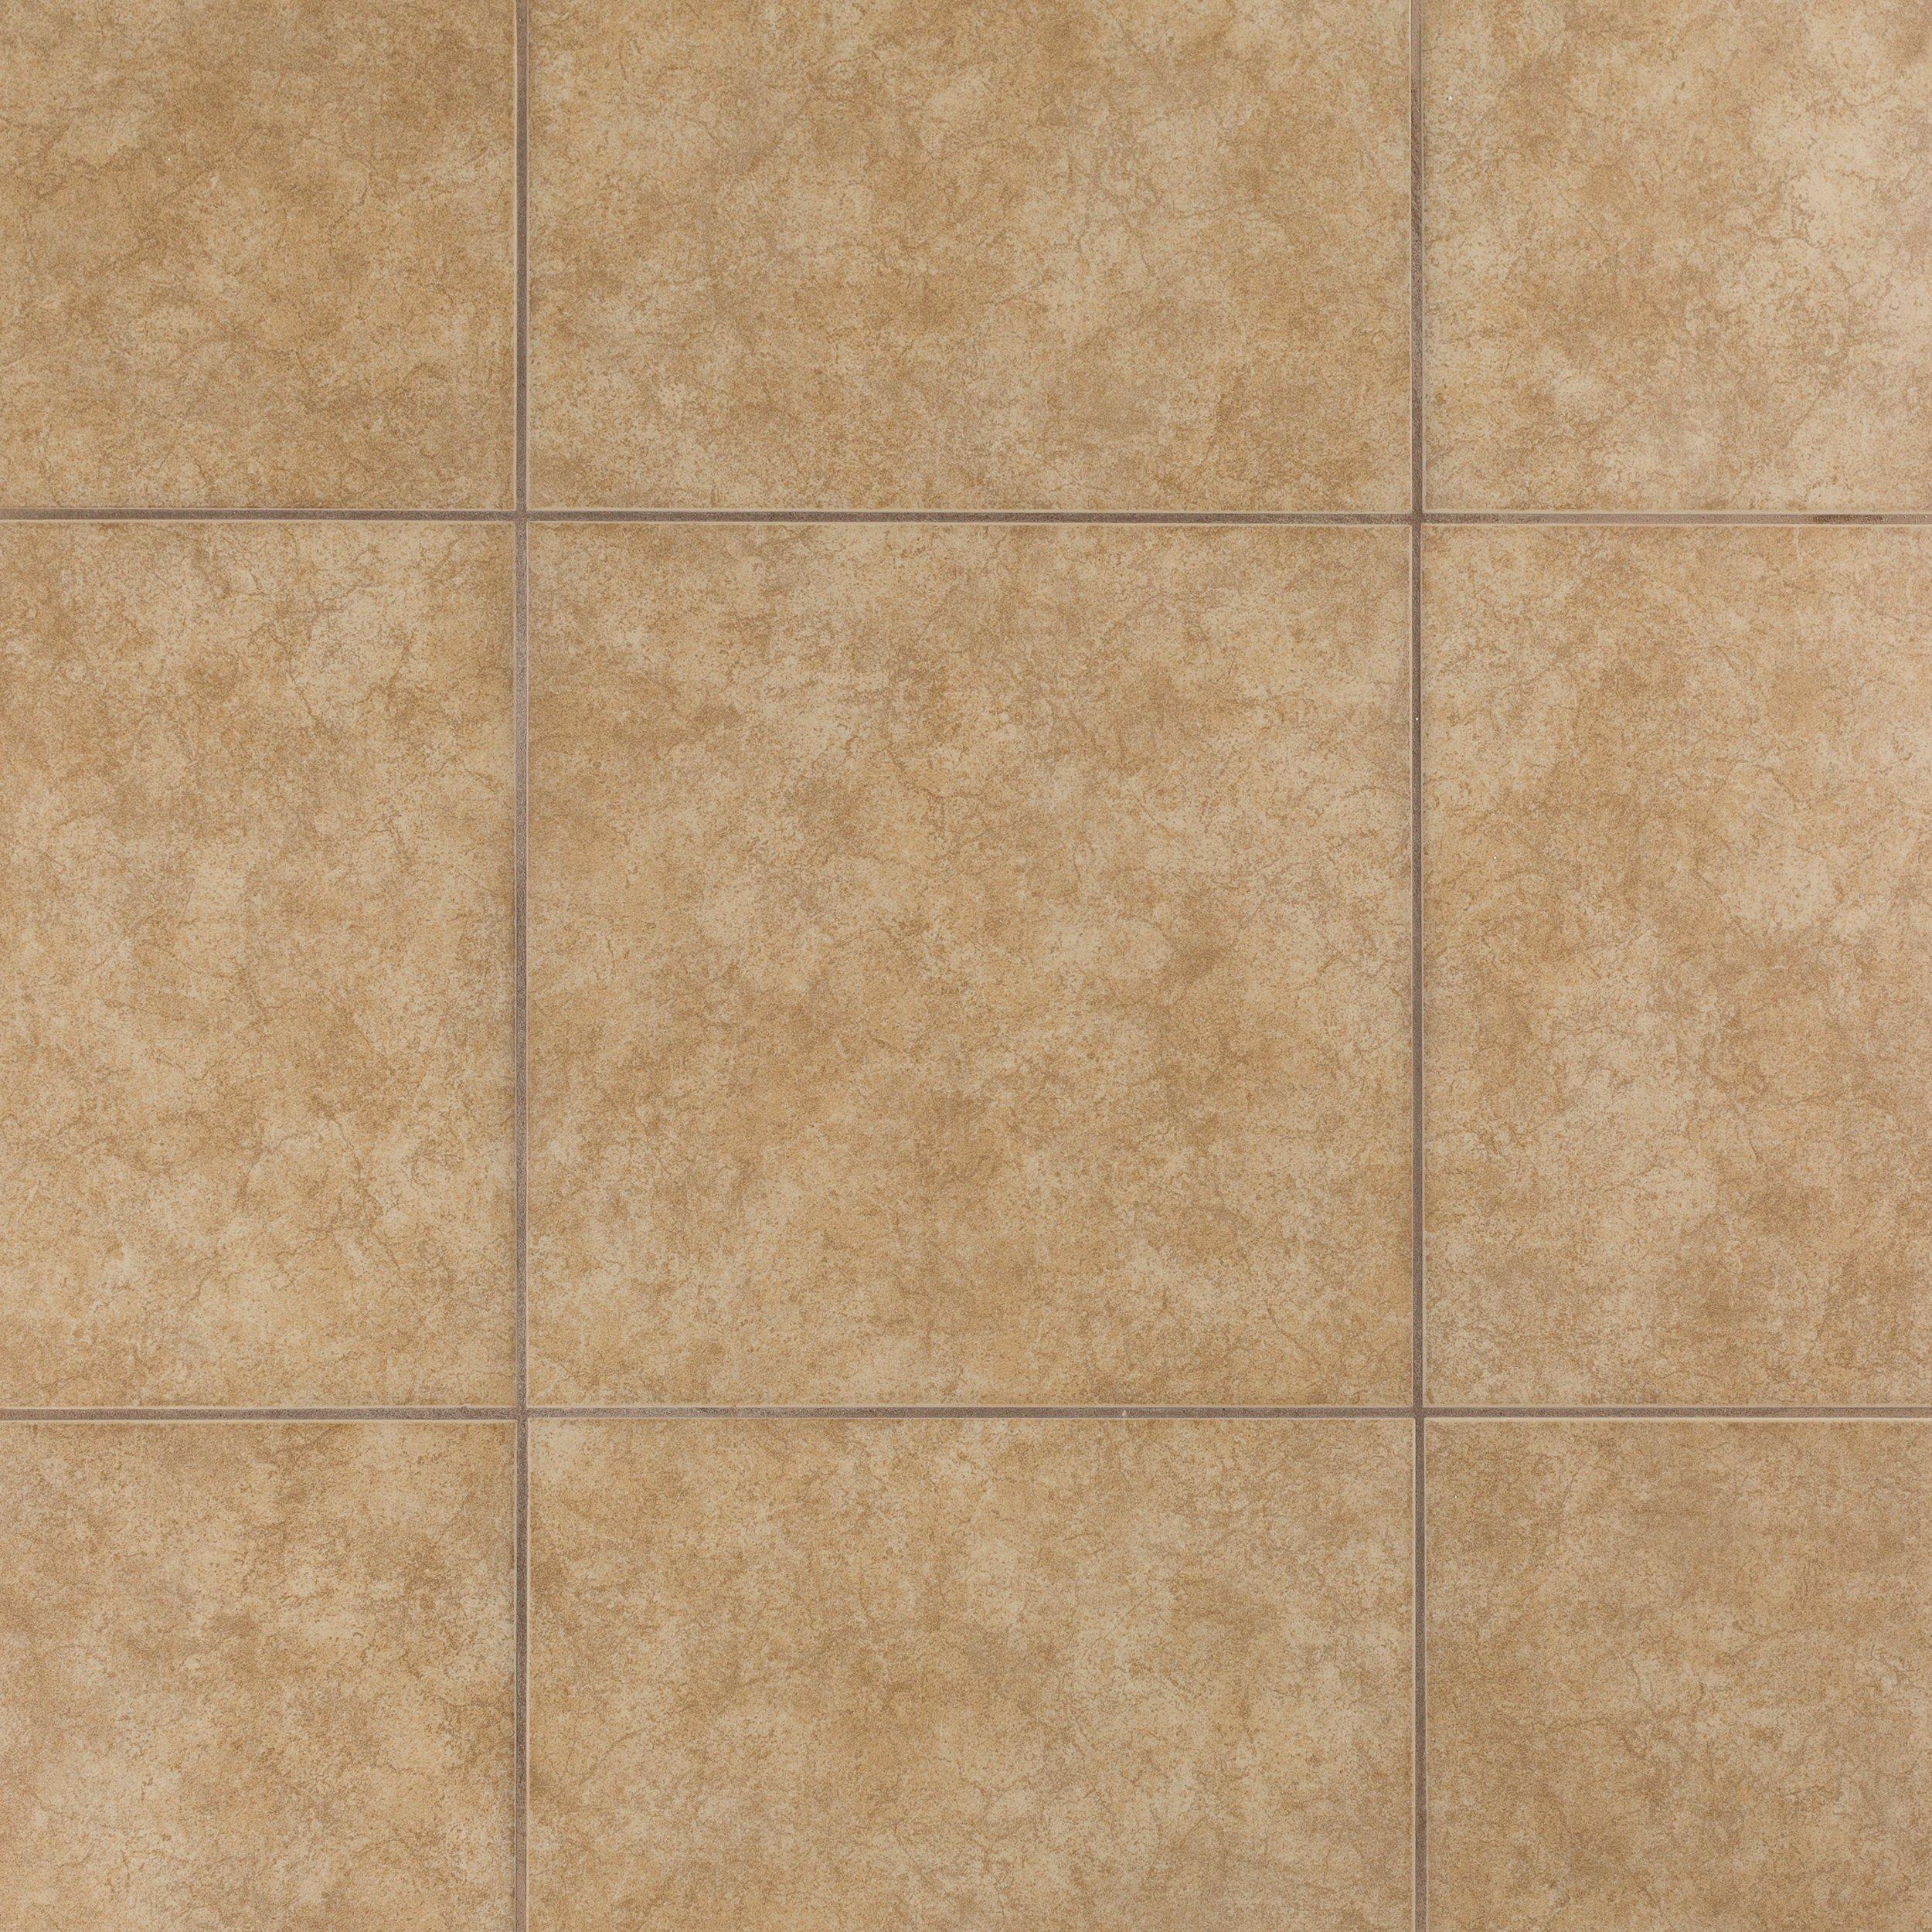 Balboa Beige Ceramic Tile Floor And Decor, Beige Ceramic Tile